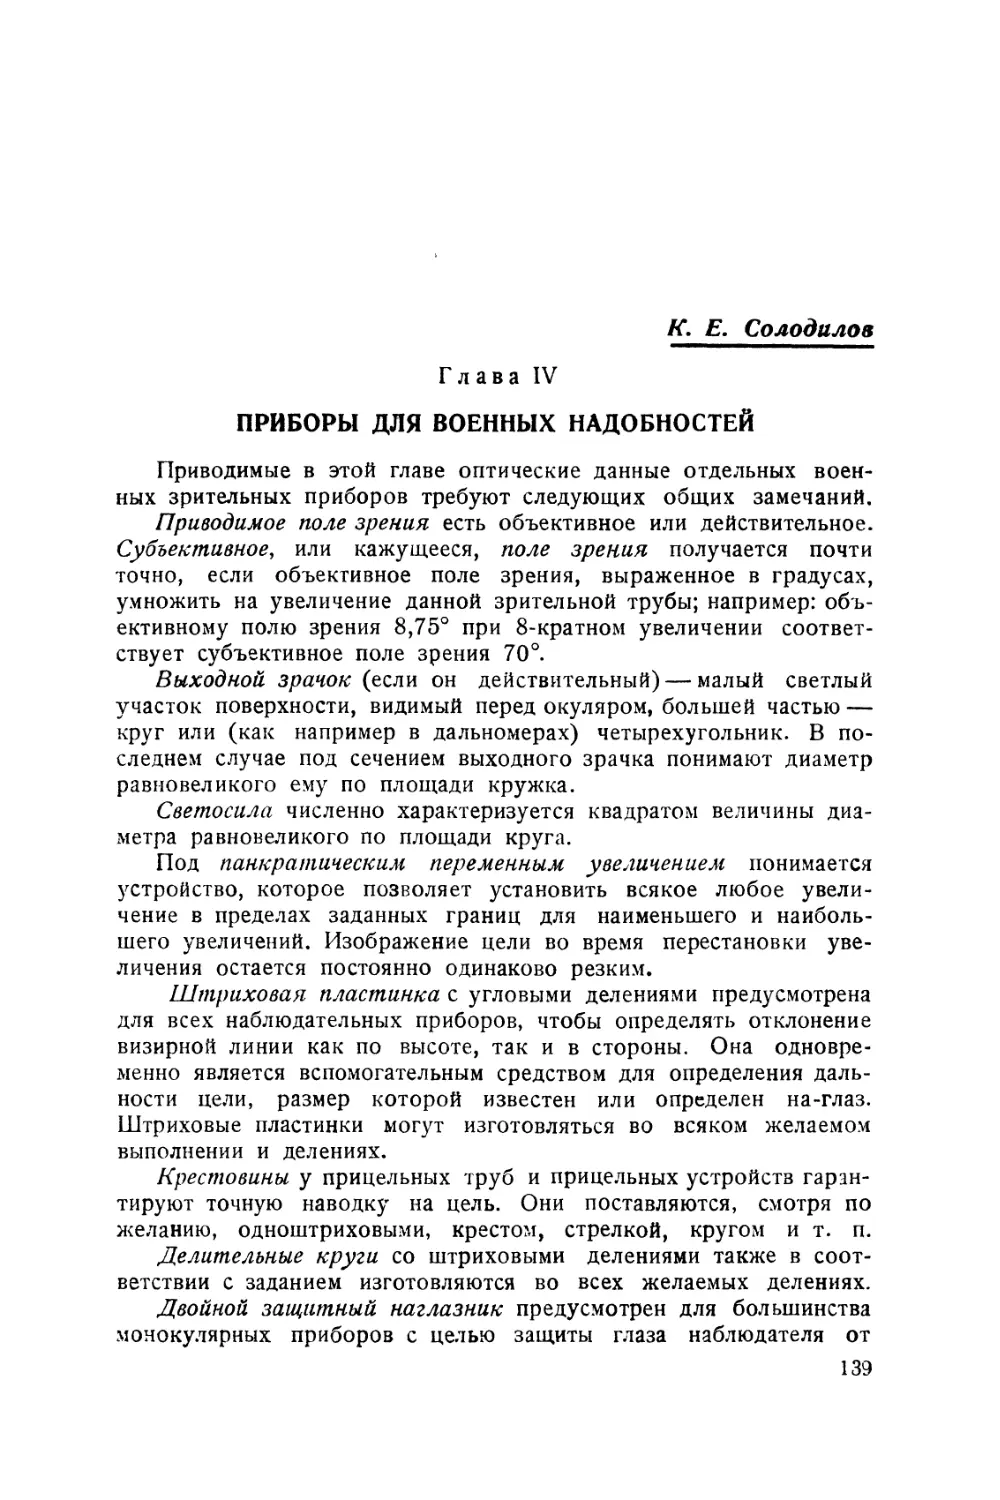 Глава IV. Приборы для военных надобностей. — К. Е. Солодилов